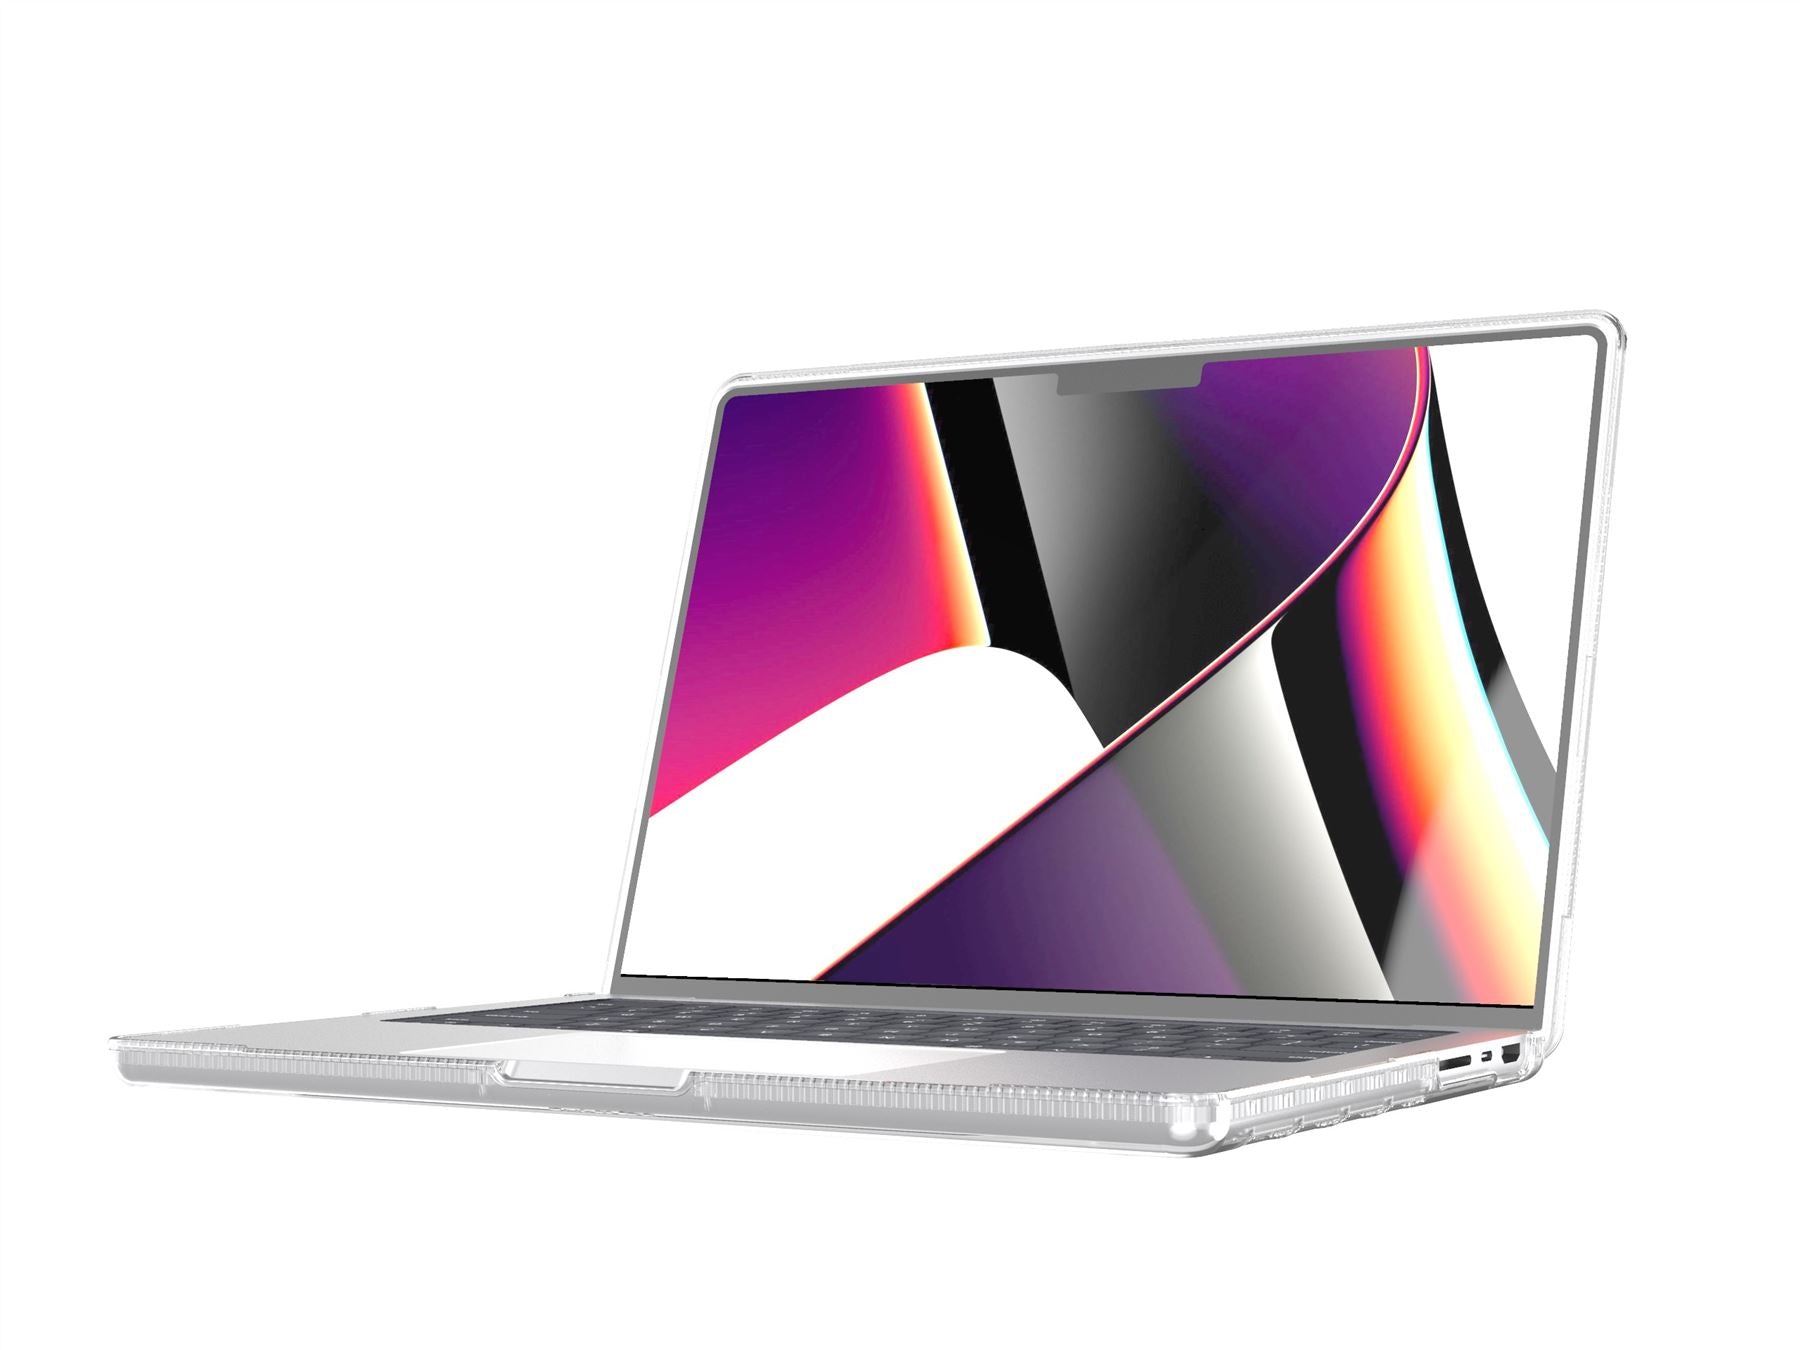 Coque Evo Tint 13 pouces de Tech21 pour MacBook Air 2020 - Carbone